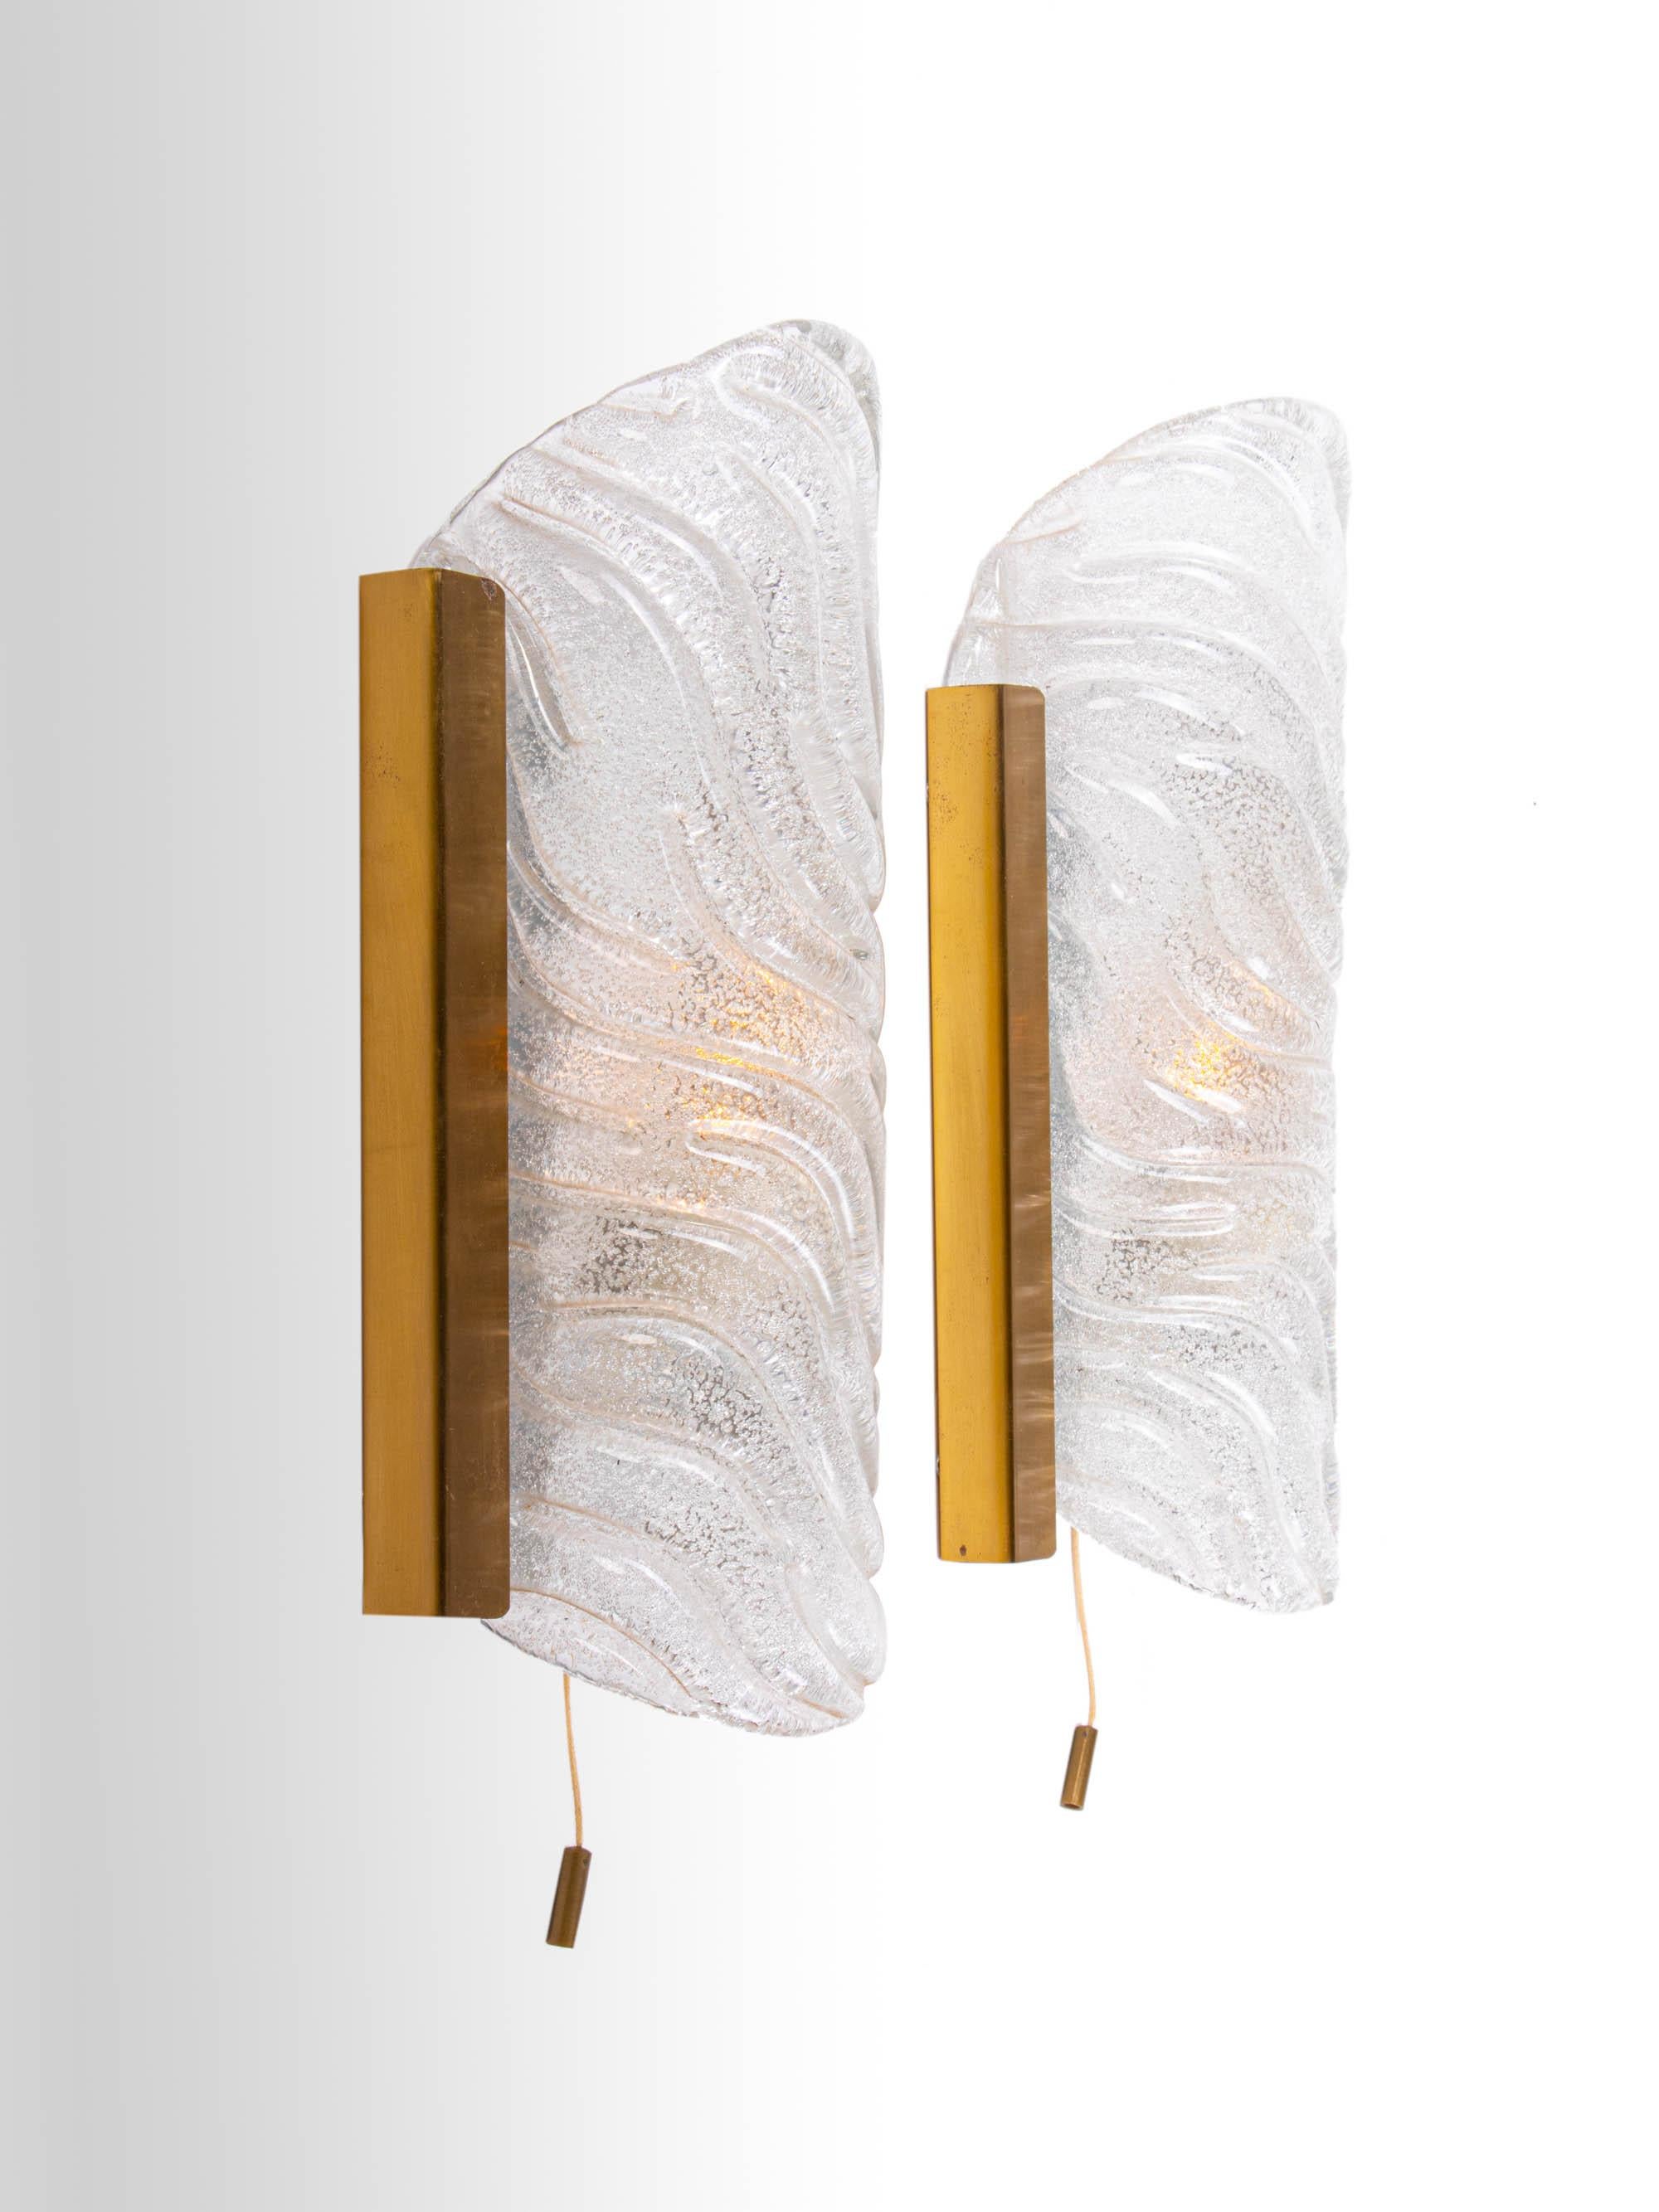 Elegantes Paar moderner Wandleuchter, entworfen von J.T. Kalmar. Die dicken Murano-Glaselemente ähneln Eiszapfen, die auf einem goldenen Messingrahmen befestigt sind. Jede Lampe gibt ausreichend indirektes warmes Licht ab. Mit dieser Leuchte setzen